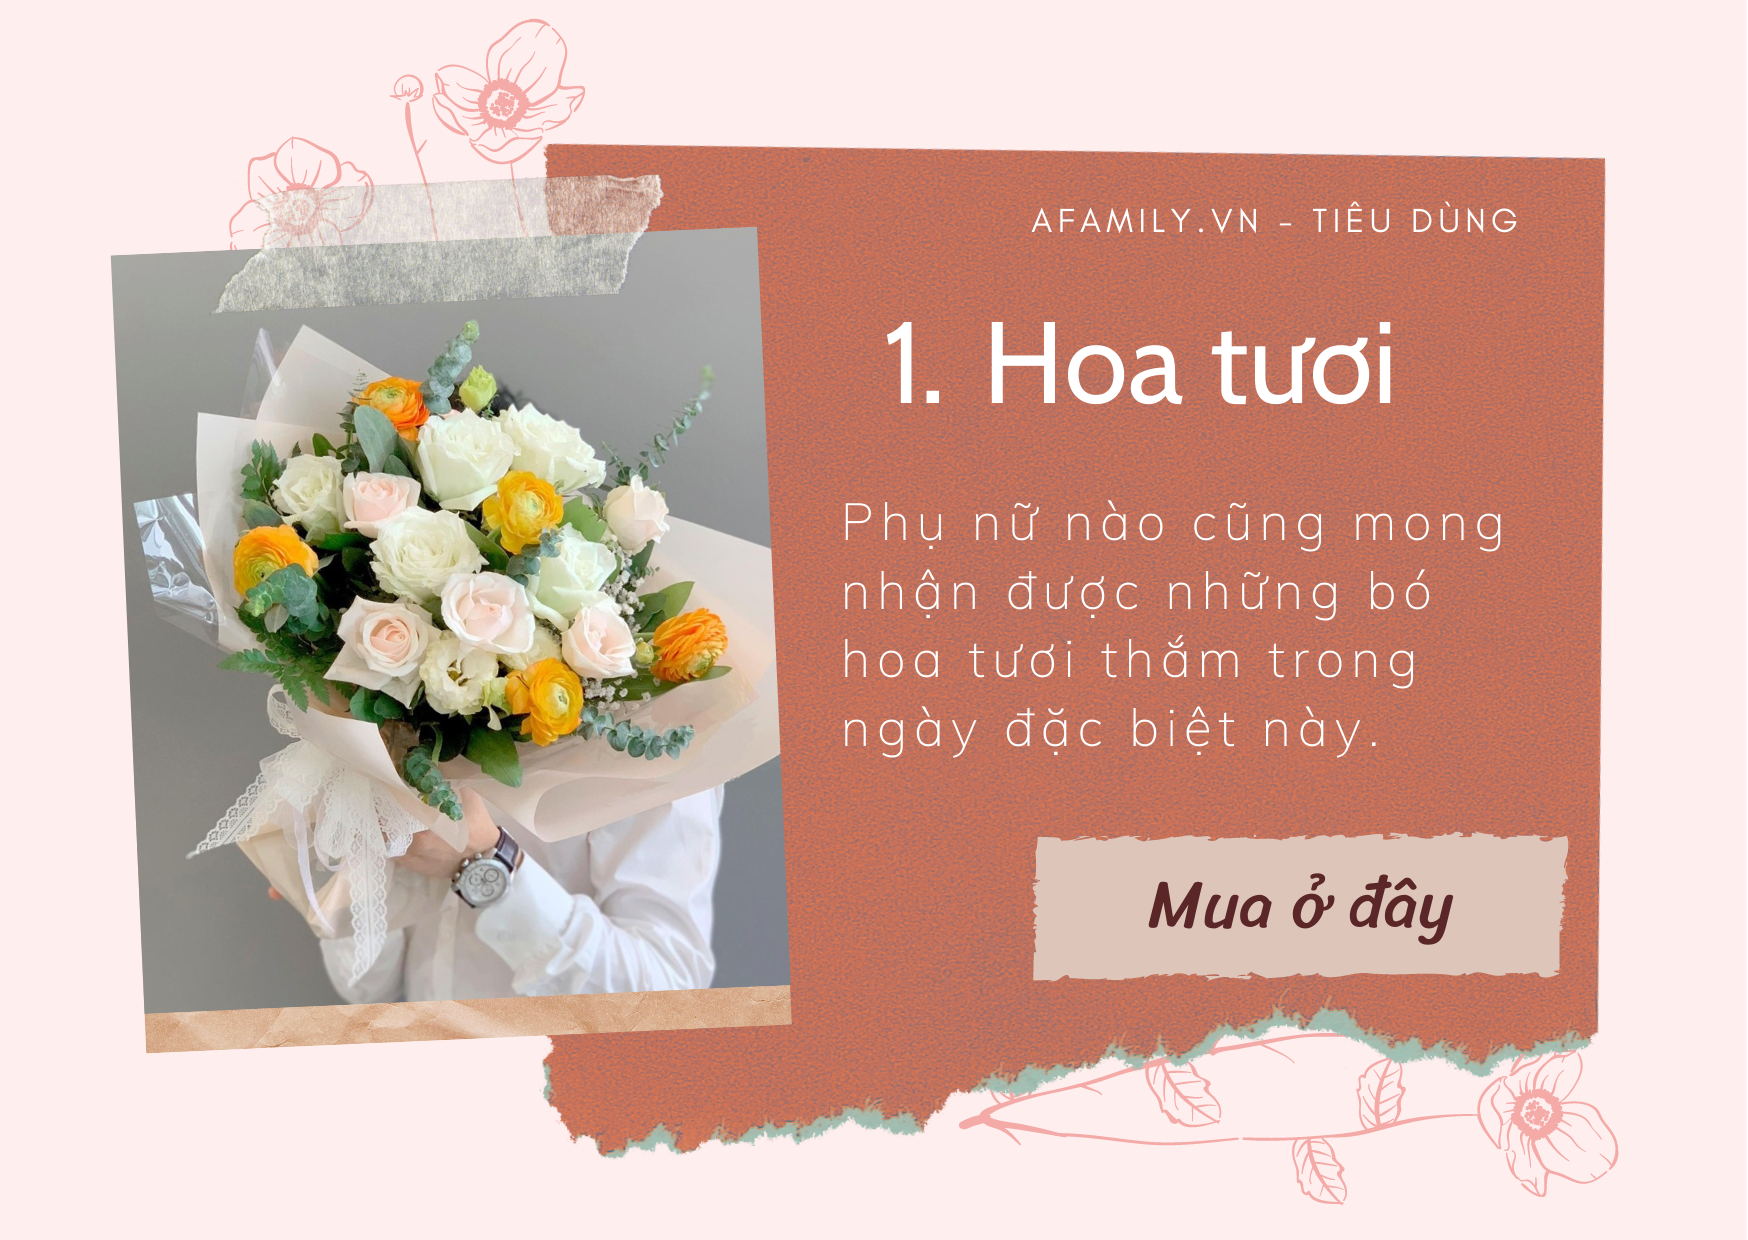 20/10 - ấn tượng quà tặng: Đến mùa lễ 20/10, một món quà nhỏ cũng đủ để gửi thắm tình yêu thương với người phụ nữ đặc biệt của chúng ta. Nhiều sản phẩm ấn tượng và độc đáo sẽ giúp bạn tìm thấy món quà tặng độc đáo và thể hiện tình cảm của mình. Chúc mừng ngày Phụ nữ Việt Nam!